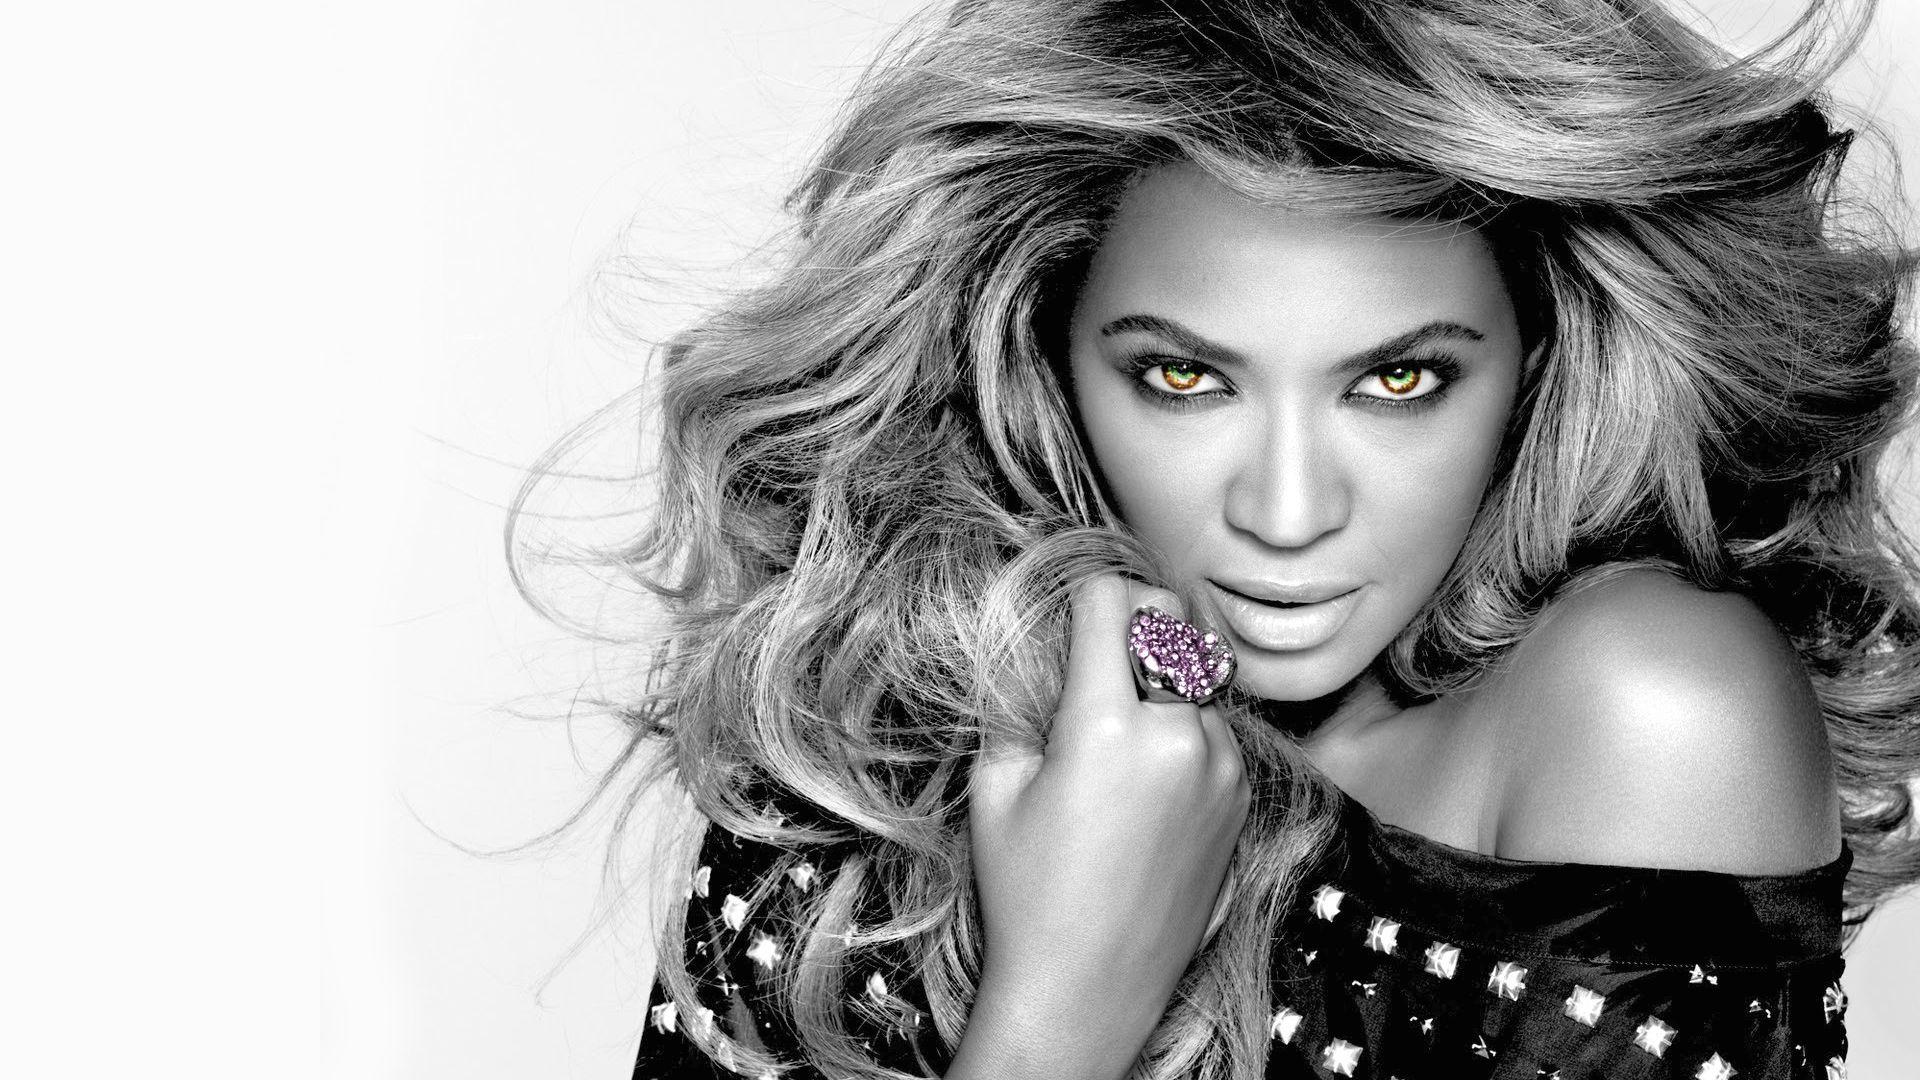 Desktop Beyonce HD Wallpaper Image Free